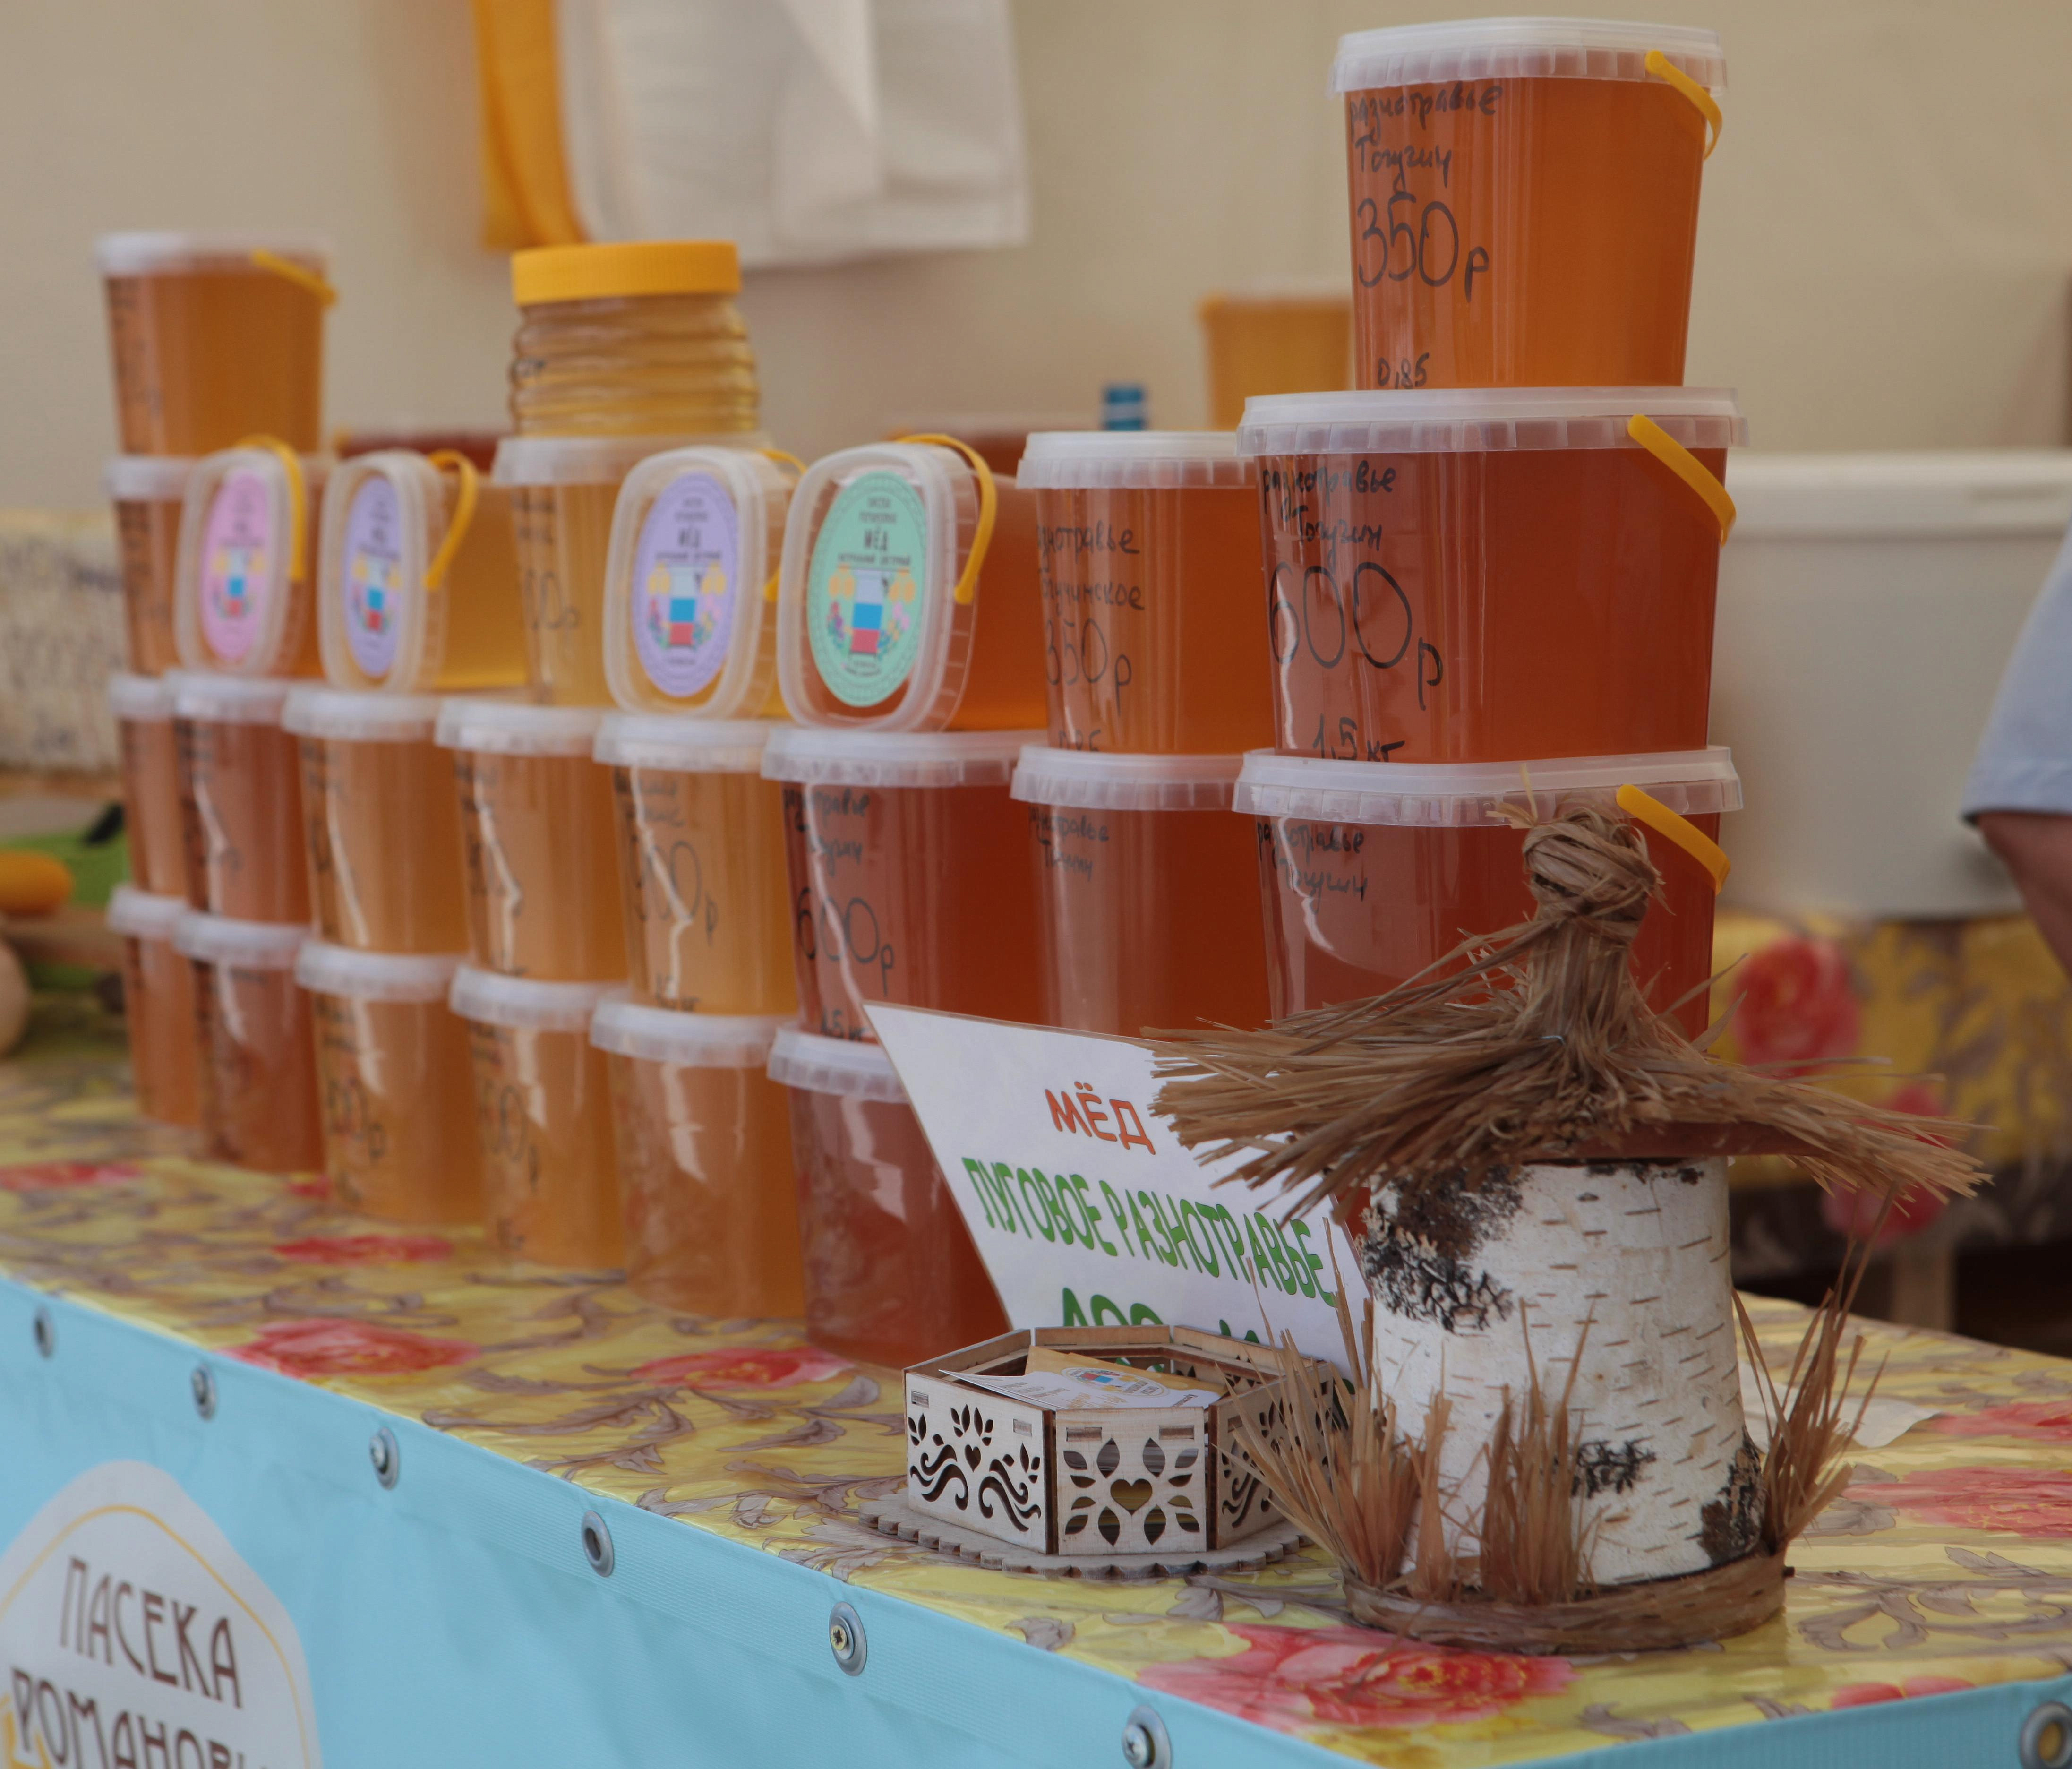 Исцеляющий язву мёд предлагают на ярмарке в Новосибирске